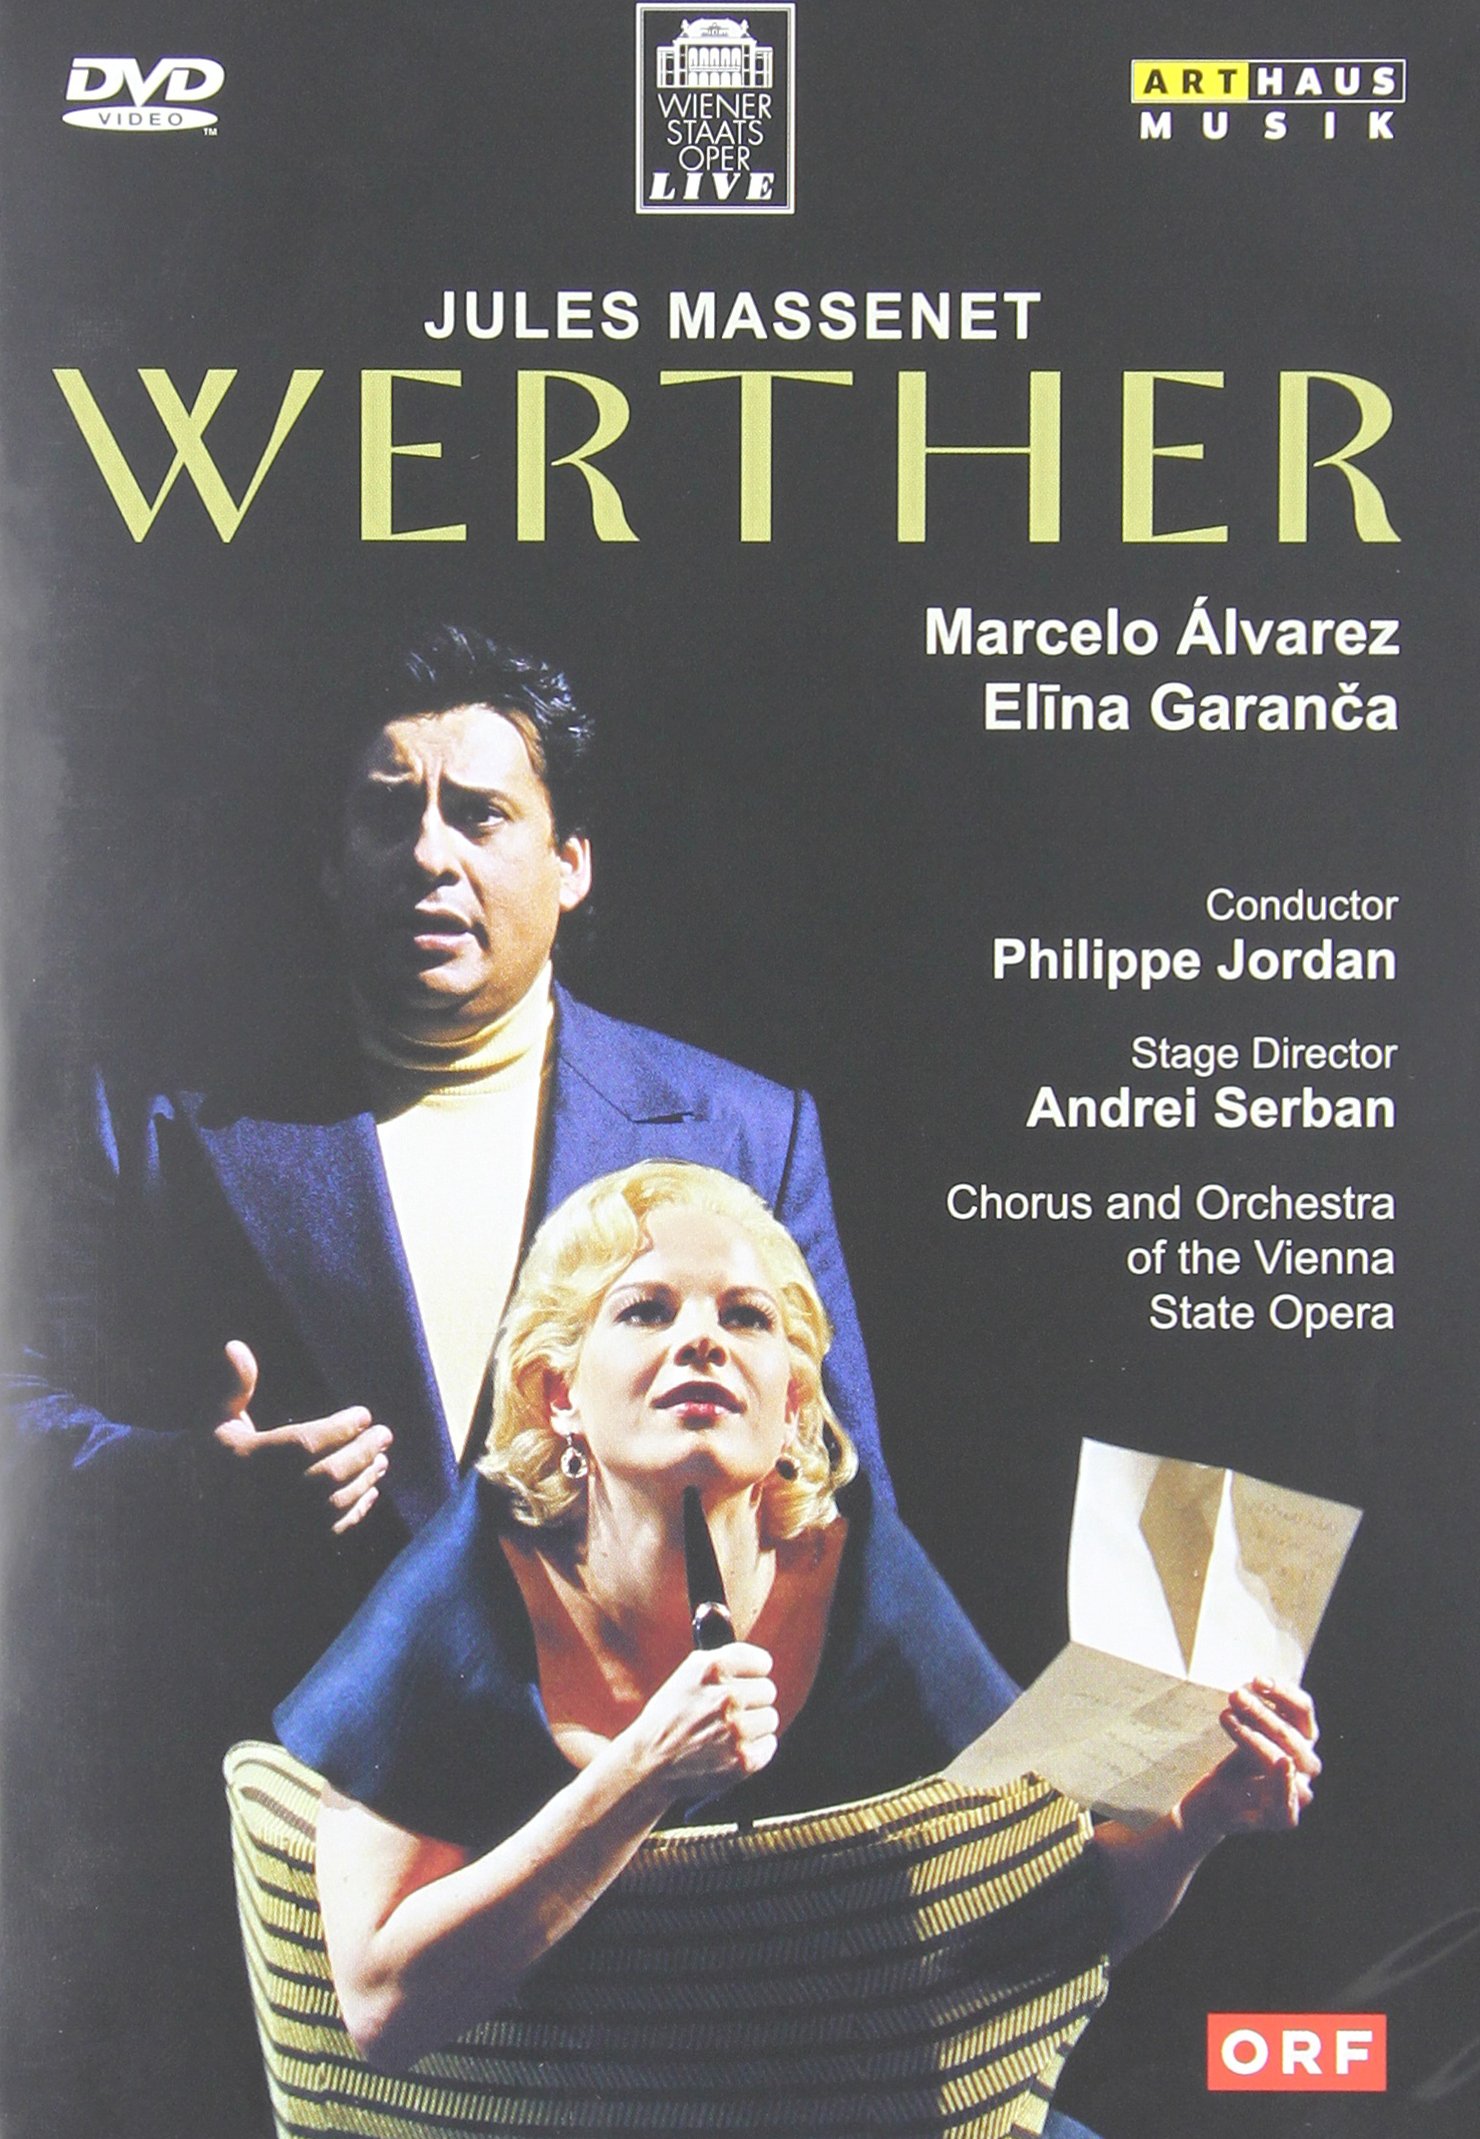 Music Dvd Wiener Staatsoper Live: Mozart, Verdi, Massenet (3 Dvd) NUOVO SIGILLATO, EDIZIONE DEL 01/06/2013 SUBITO DISPONIBILE